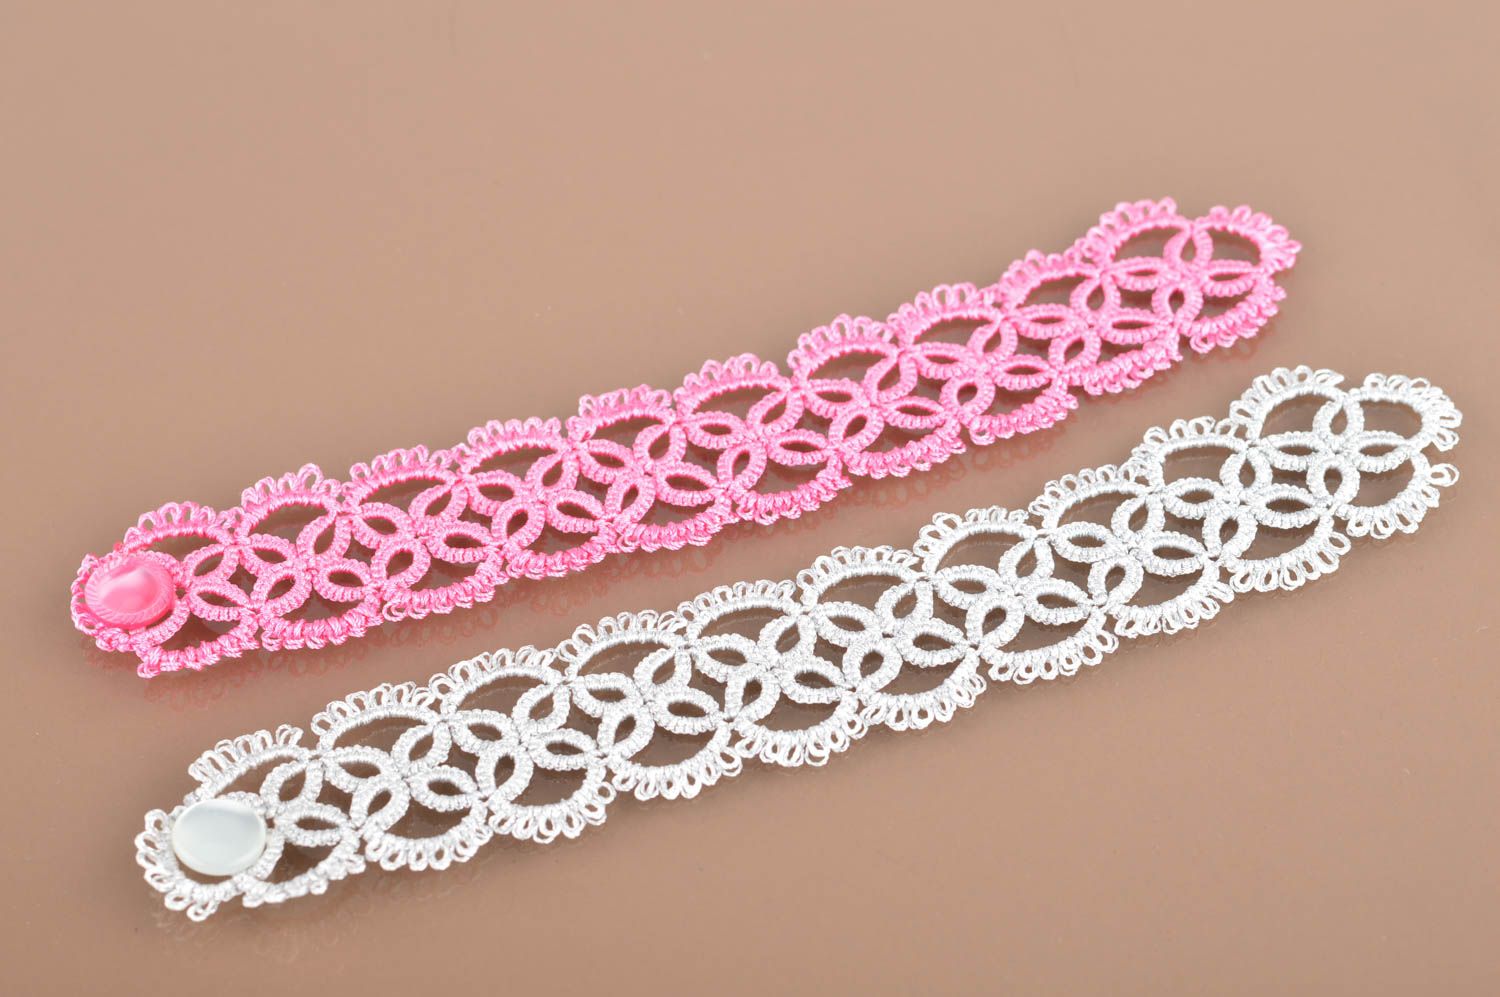 Комплект браслетов в технике фриволите белый и розовый 2 изделия хендмейд фото 2